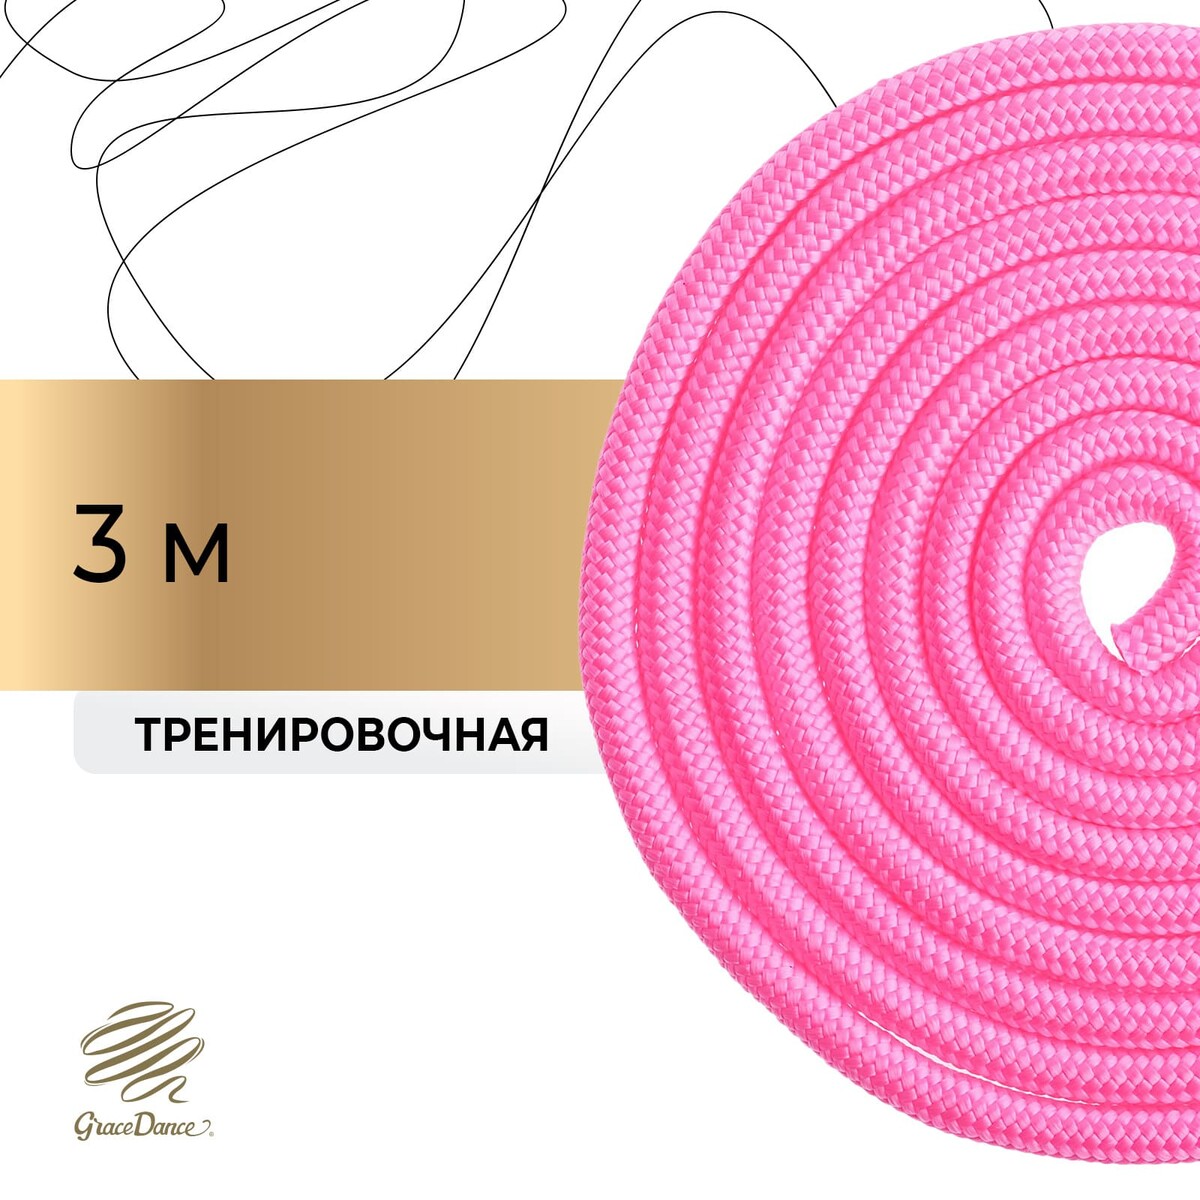 Скакалка для художественной гимнастики grace dance, 3 м, цвет розовый